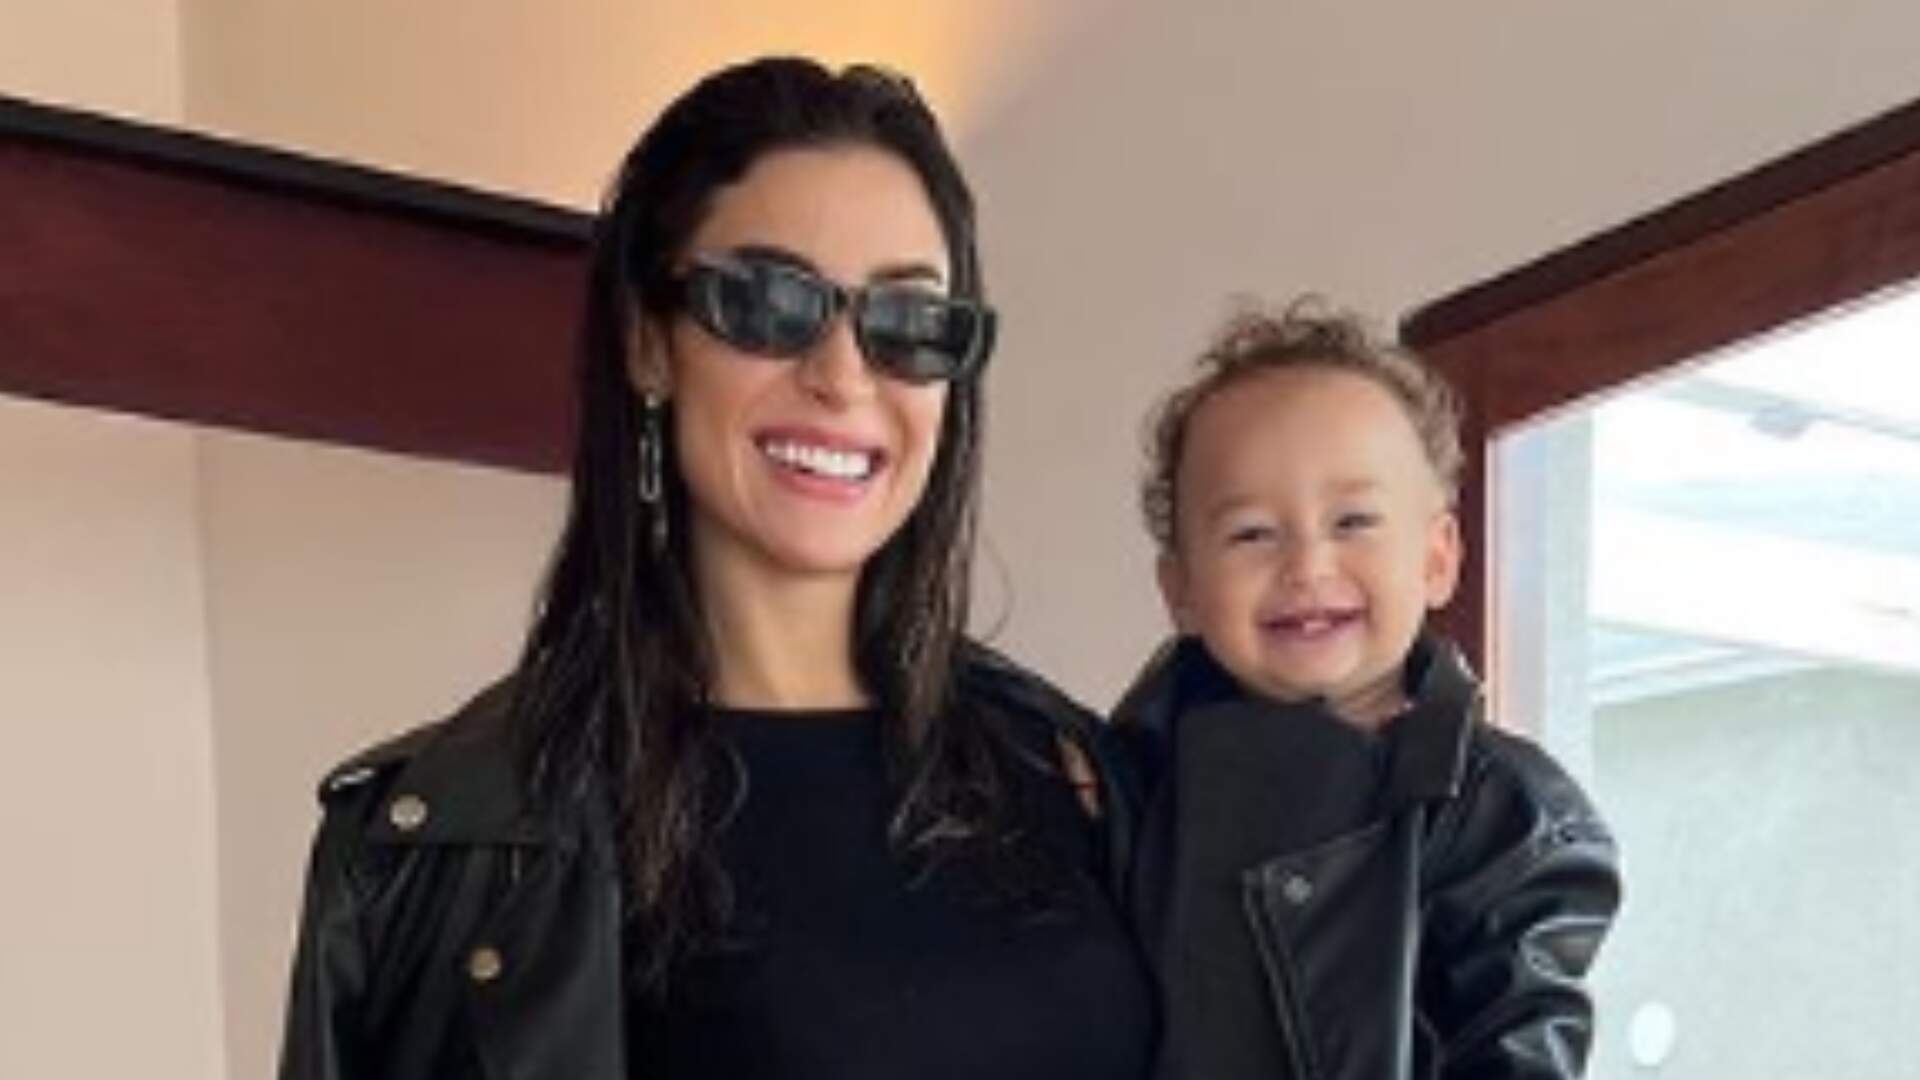 “Minha família nada tradicional”: Bianca Andrade e filho combinam look de couro - Metropolitana FM